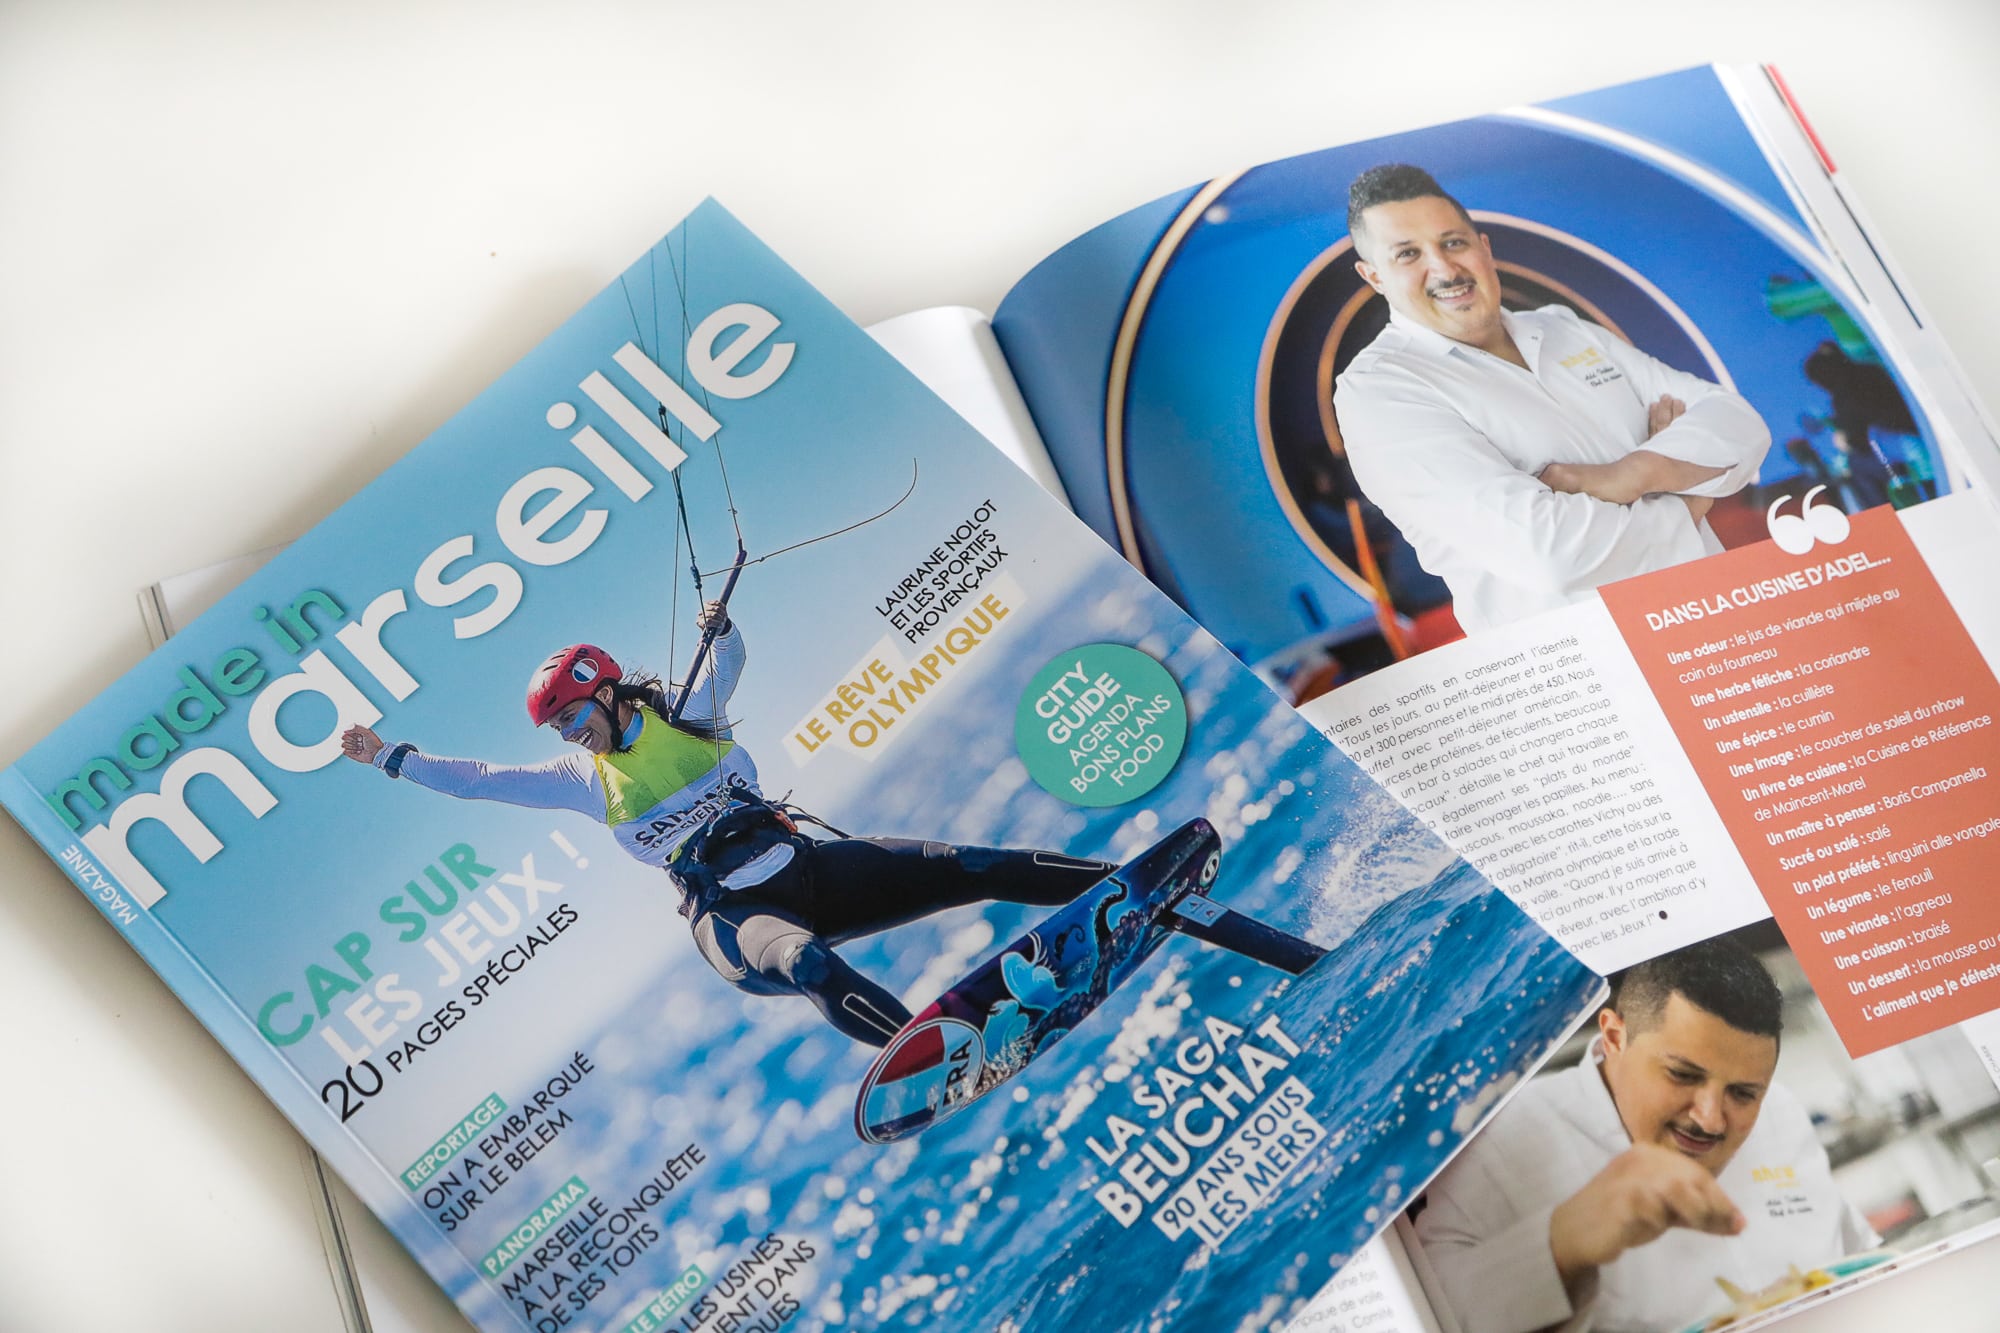 magazine made in marseille, Vidéo | Feuilletez le nouveau numéro de notre magazine Made in Marseille, Made in Marseille